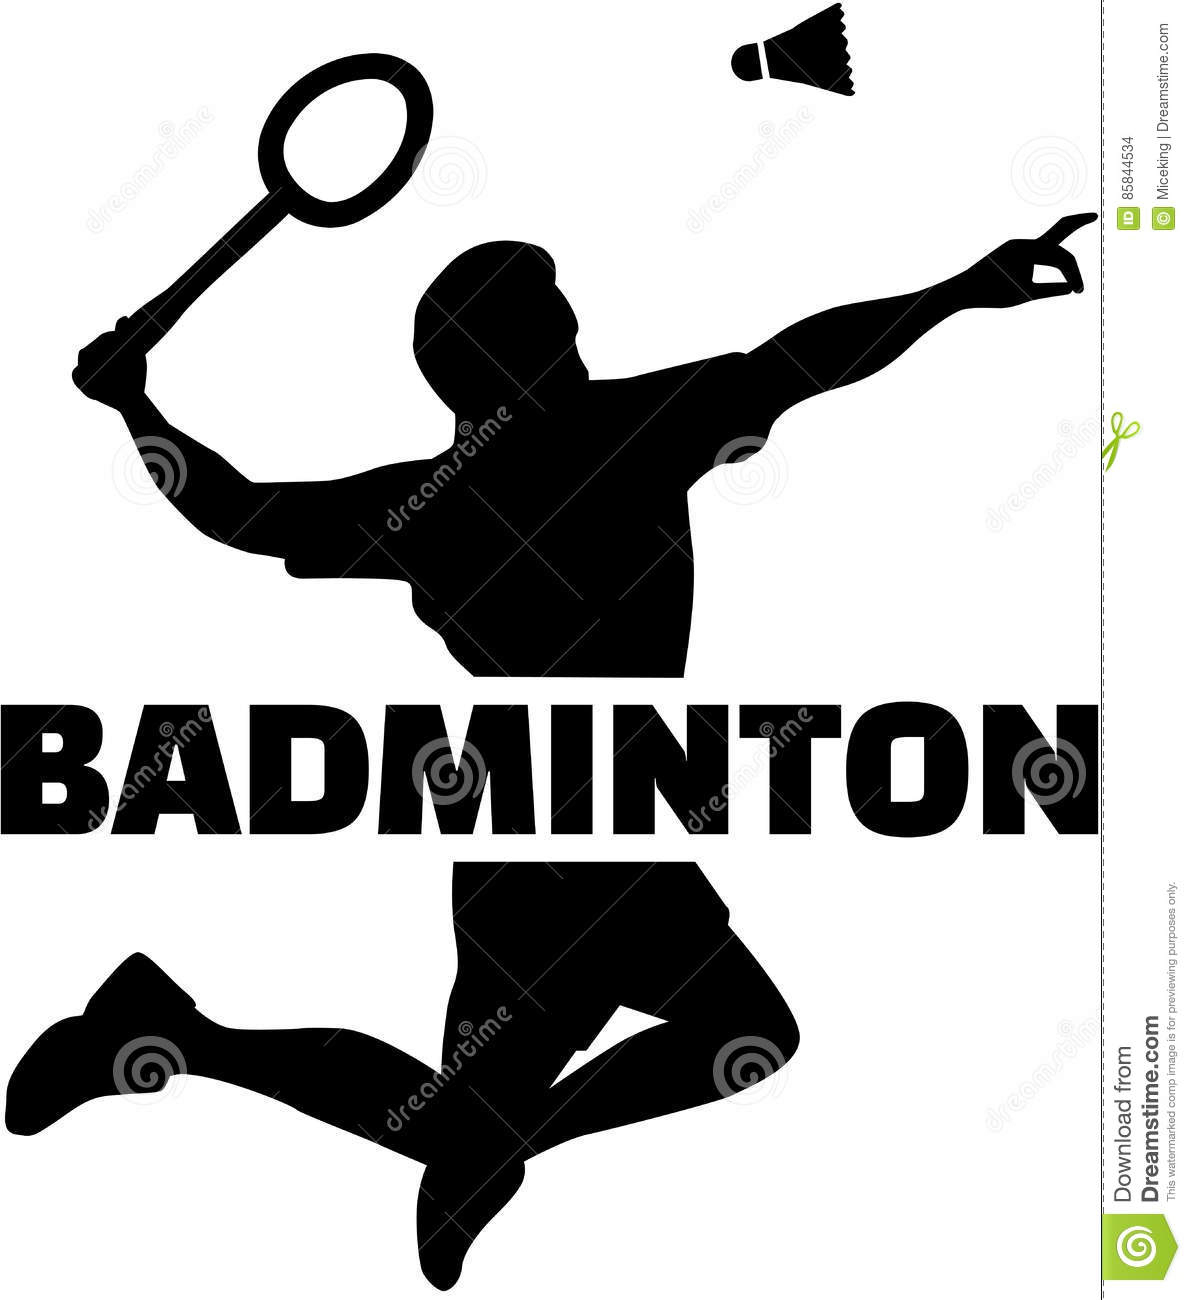 Silhouette De Joueur De Badminton Avec Le Mot Illustration serapportantà Dessin De Badminton 